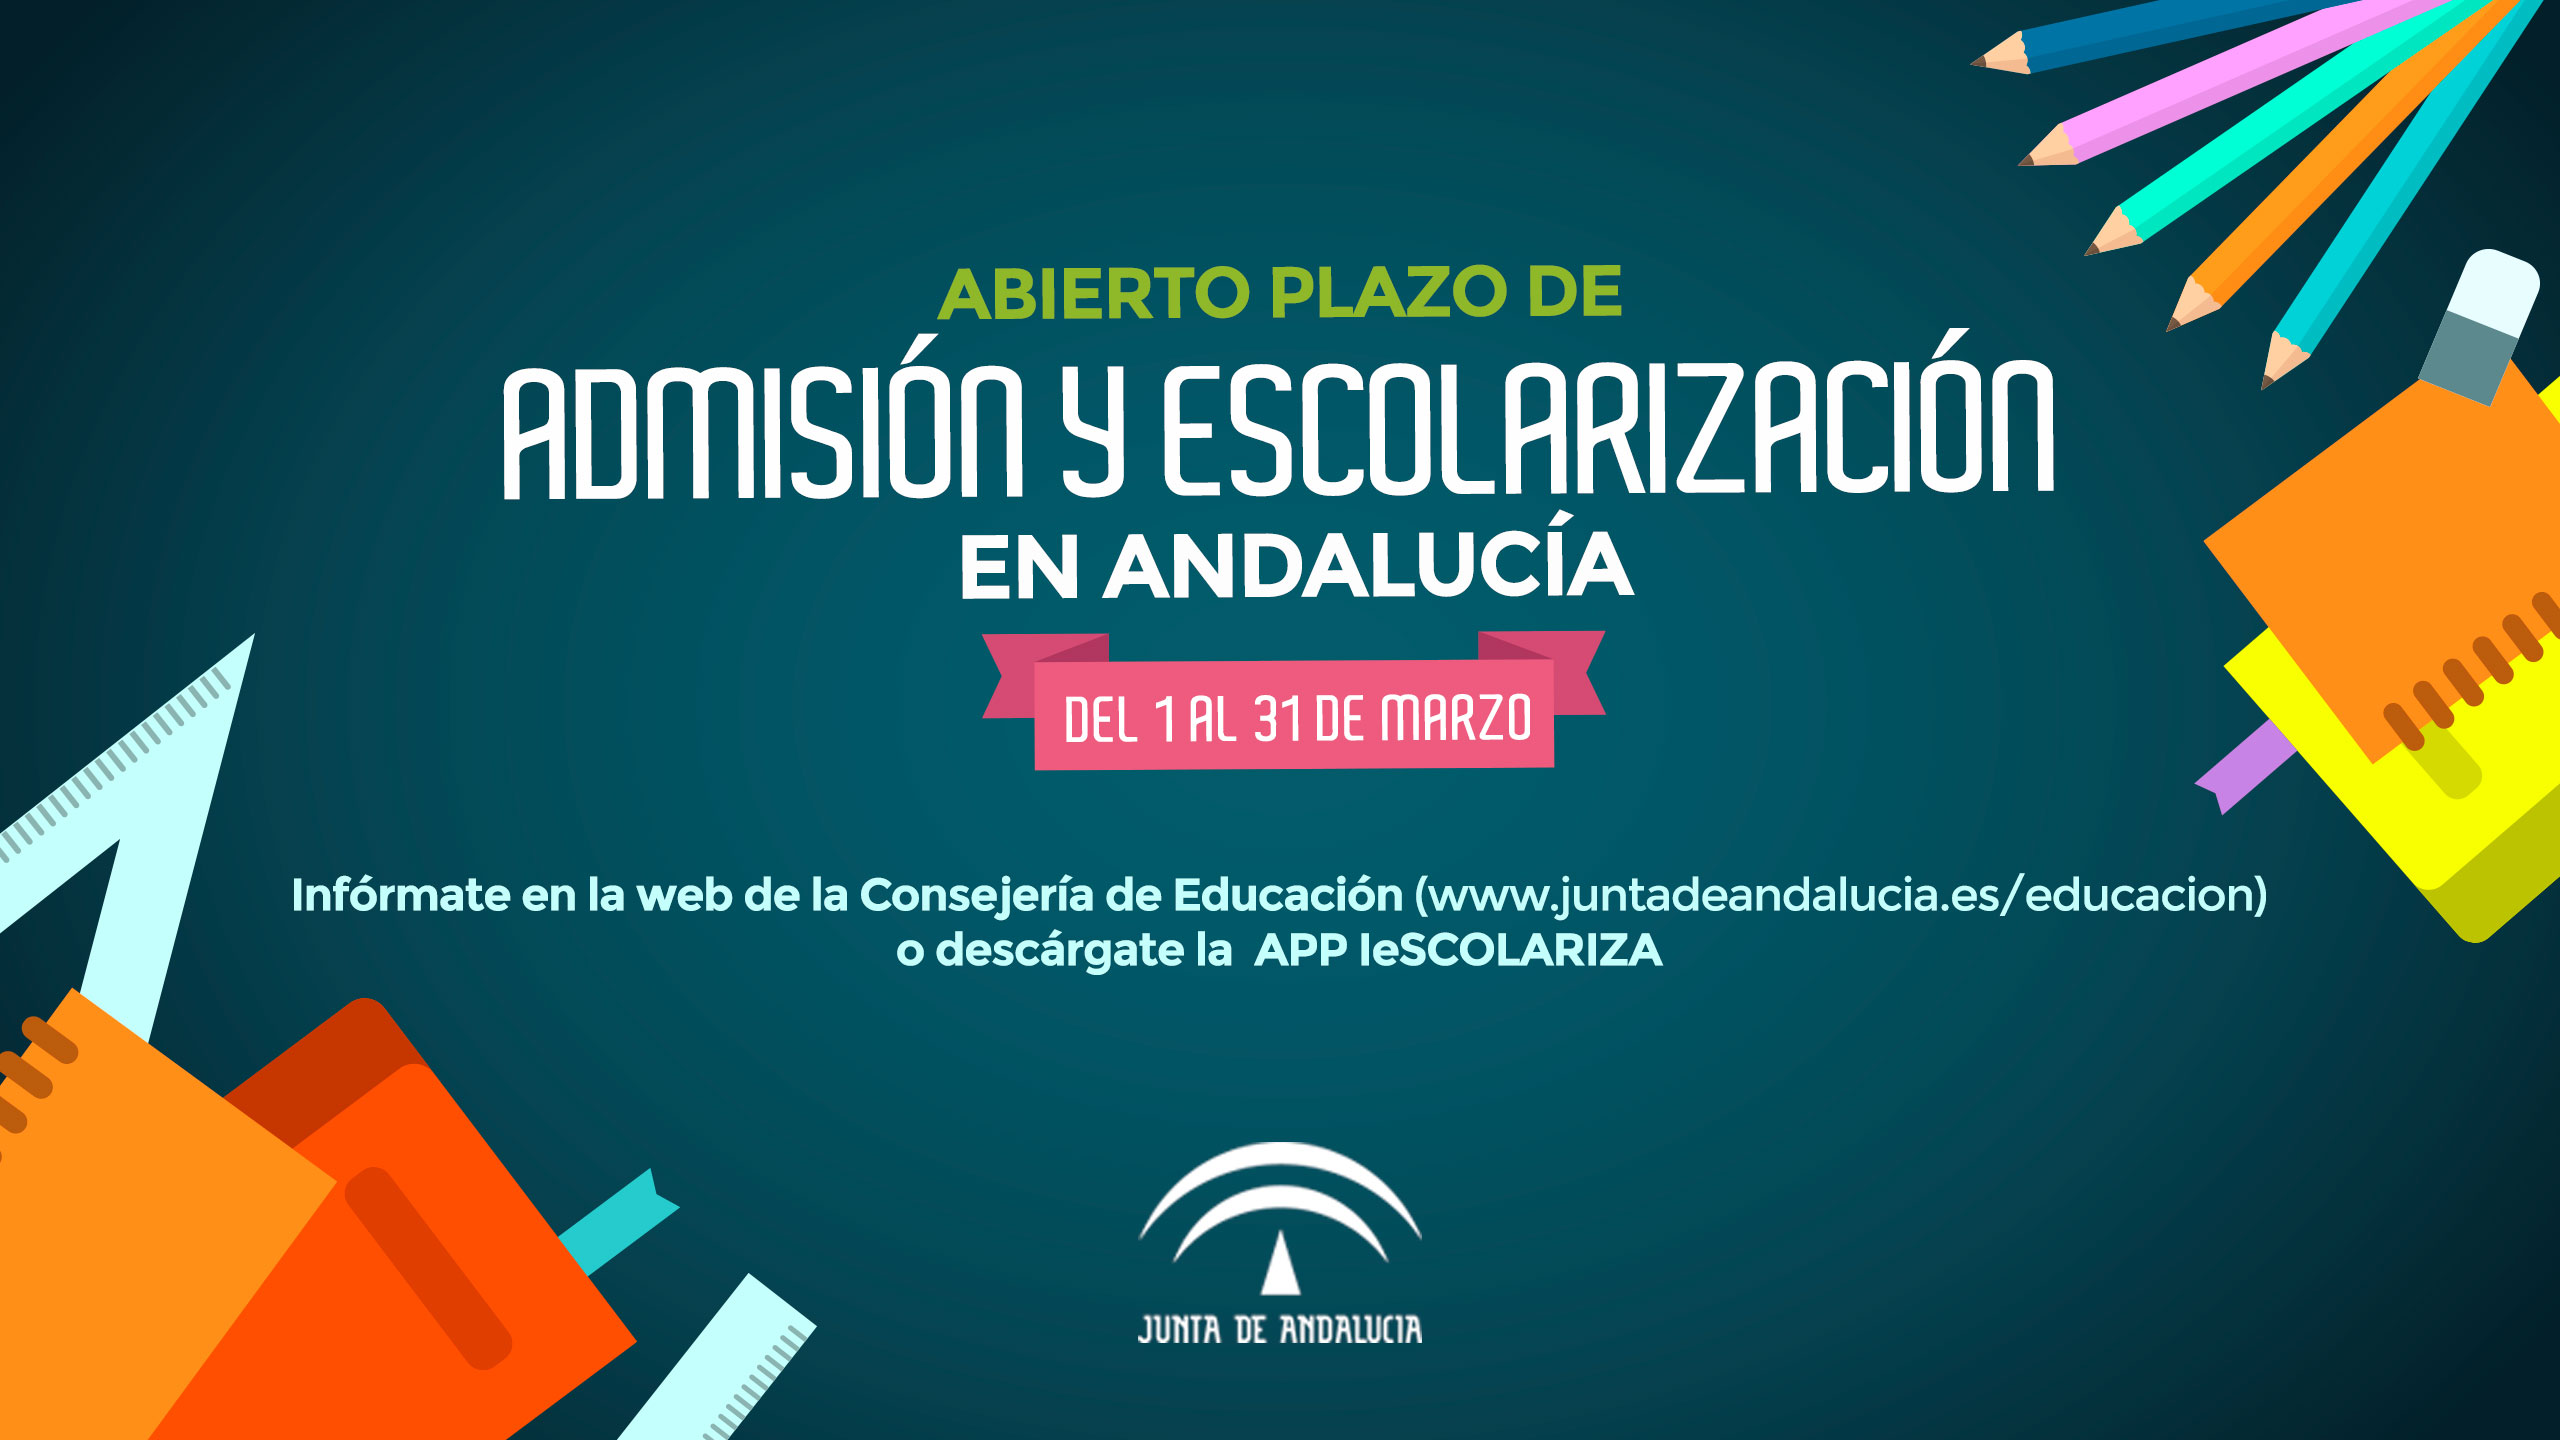 Escolarización: Admisión y escolarización en Andalucía. Del 1 al 31 de marzo